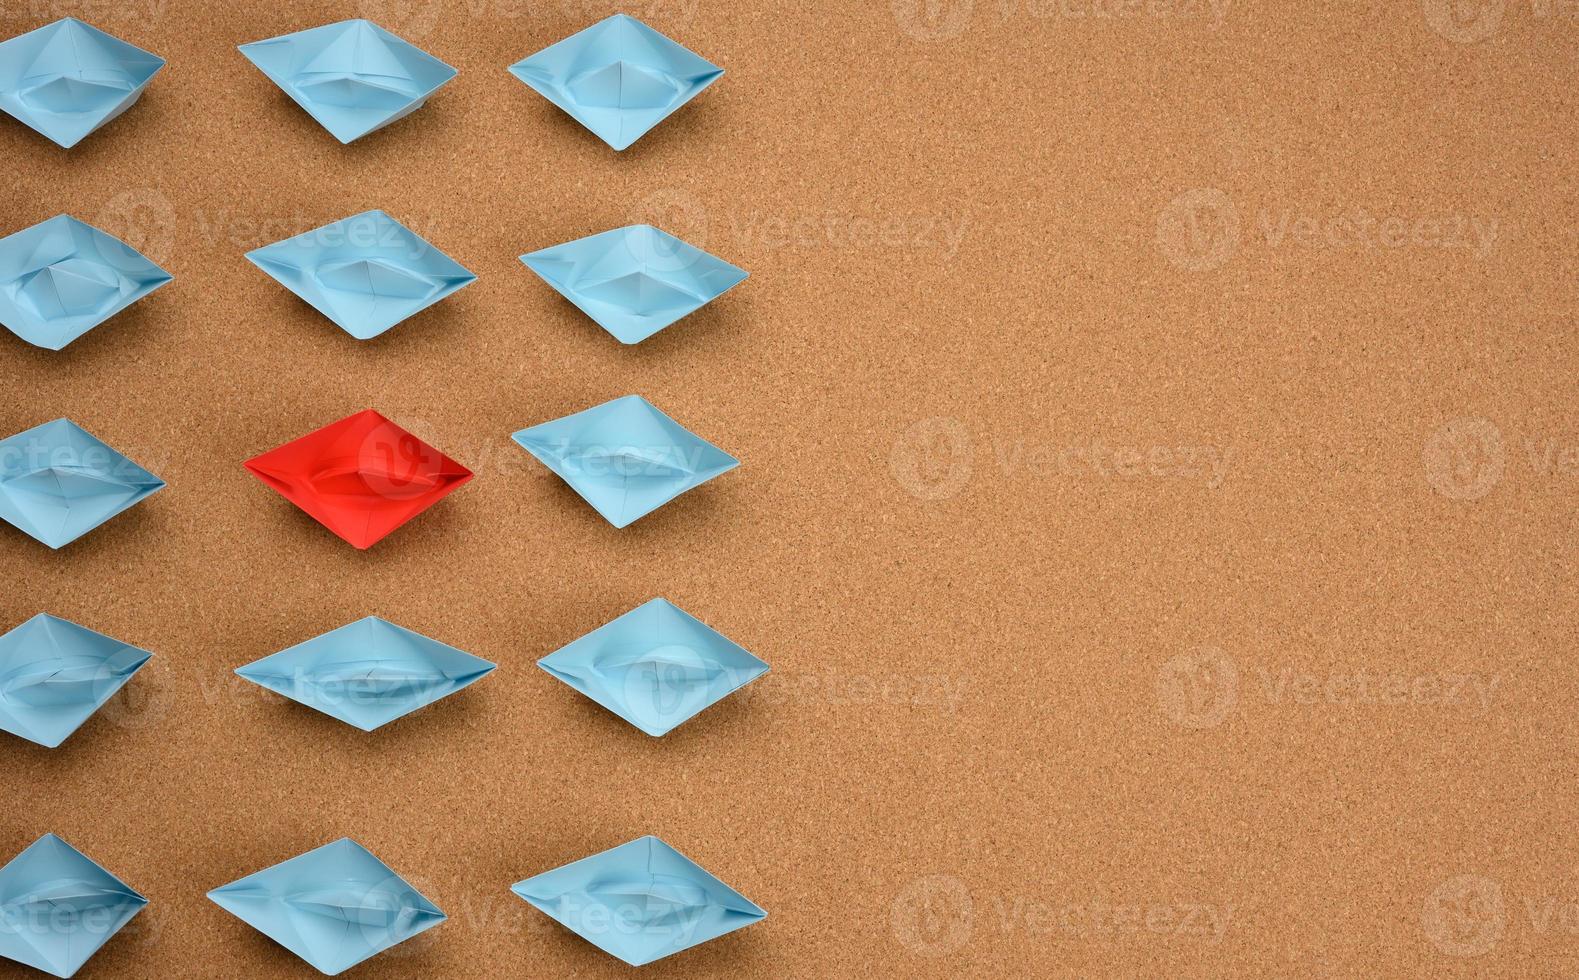 groupe de bateaux en papier bleu et un rouge au milieu sur fond marron photo